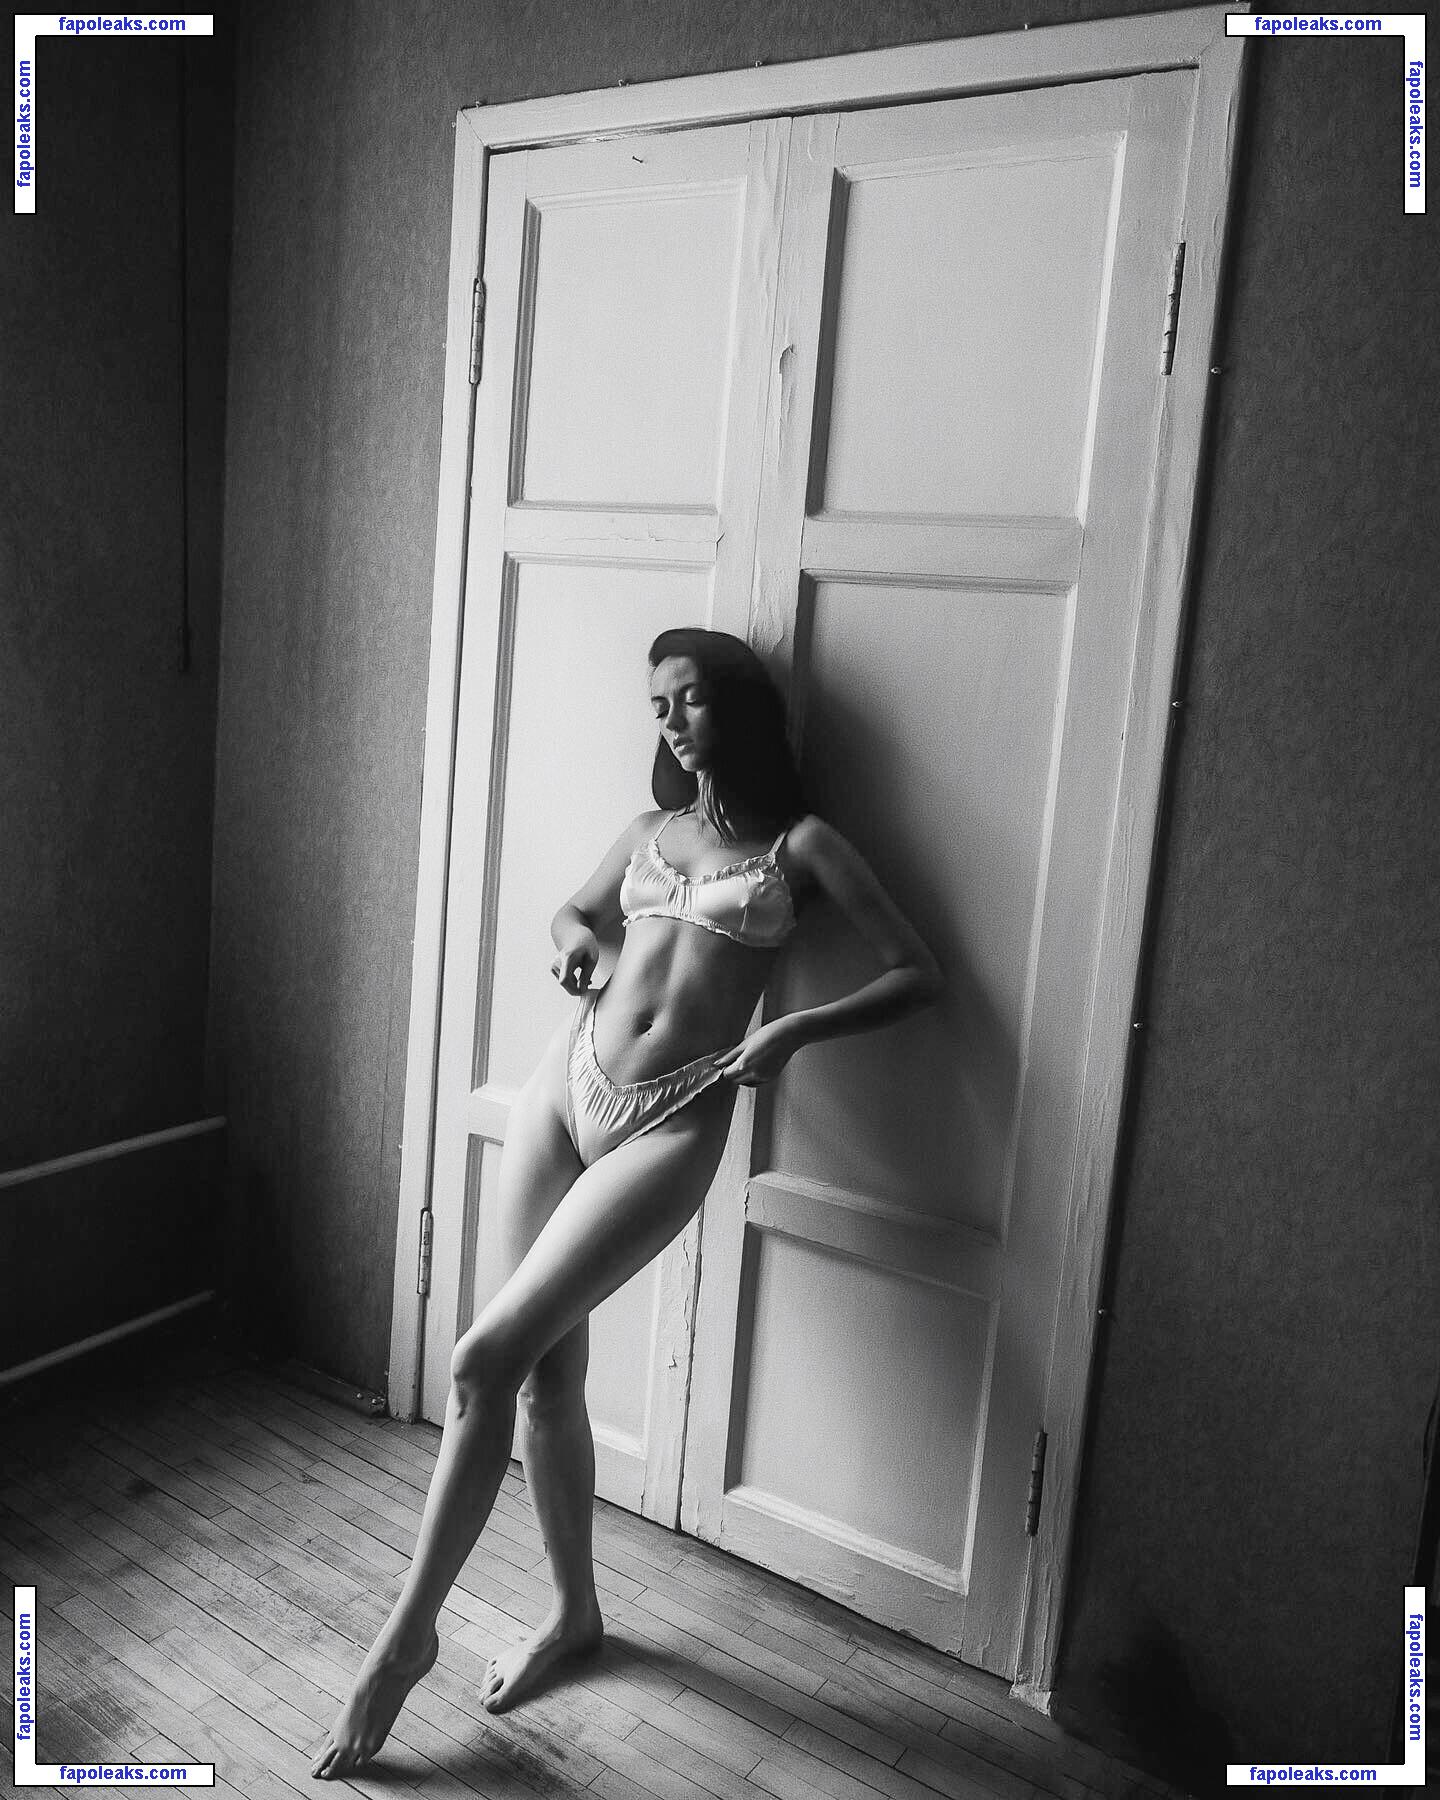 katya_mozhina / Katenka Mozhina / katyamozhina nude photo #0053 from OnlyFans